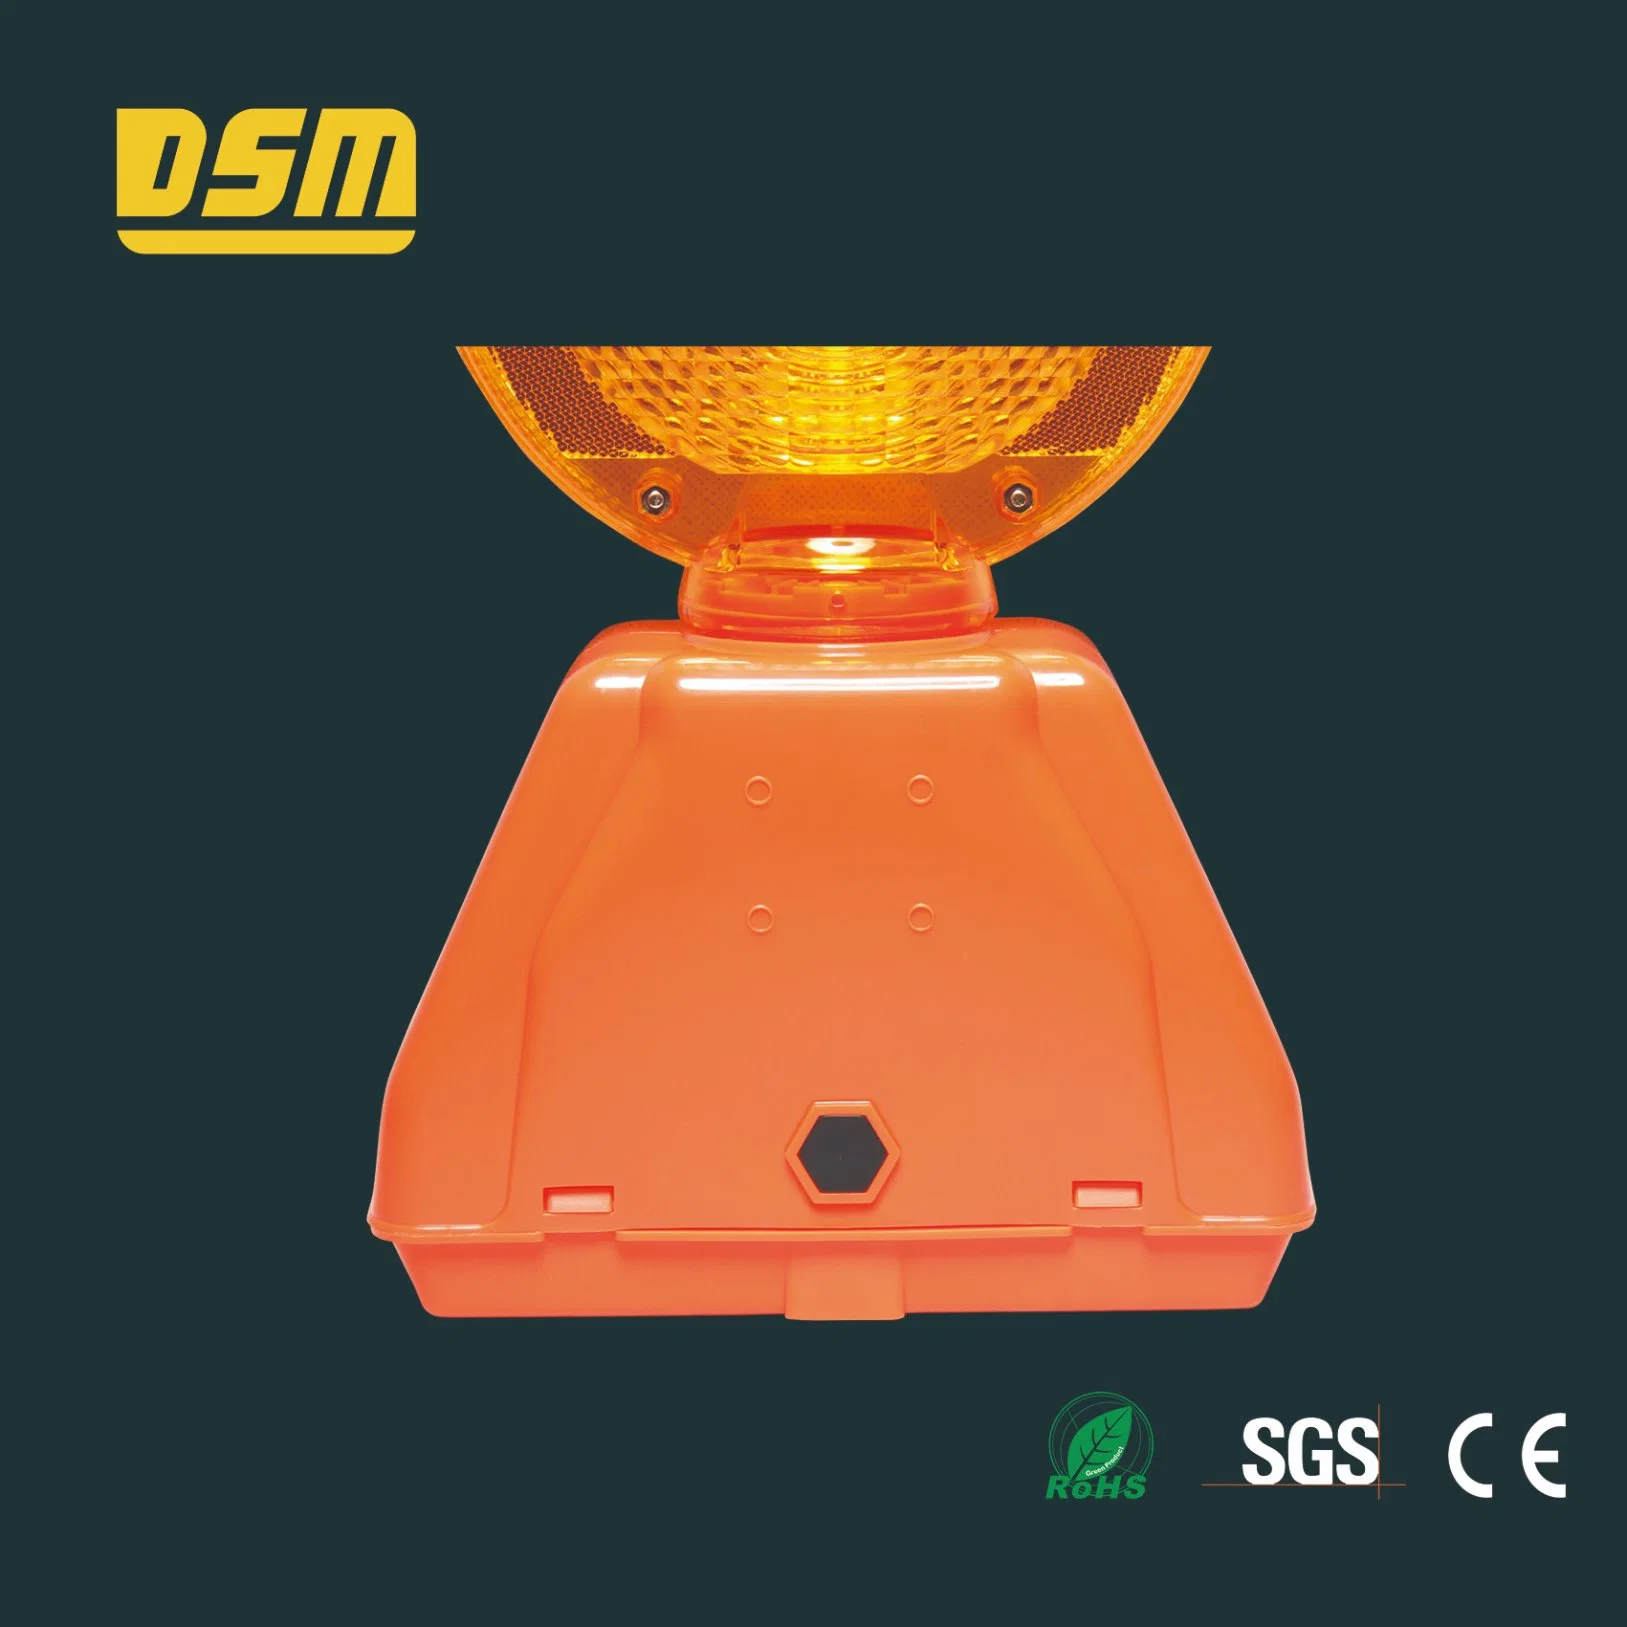 الموافقة على استخدام RoHS منخفض السعر لمصباح تحذير DSM في جنوب شرق آسيا التحكم في ضوء حركة المرور